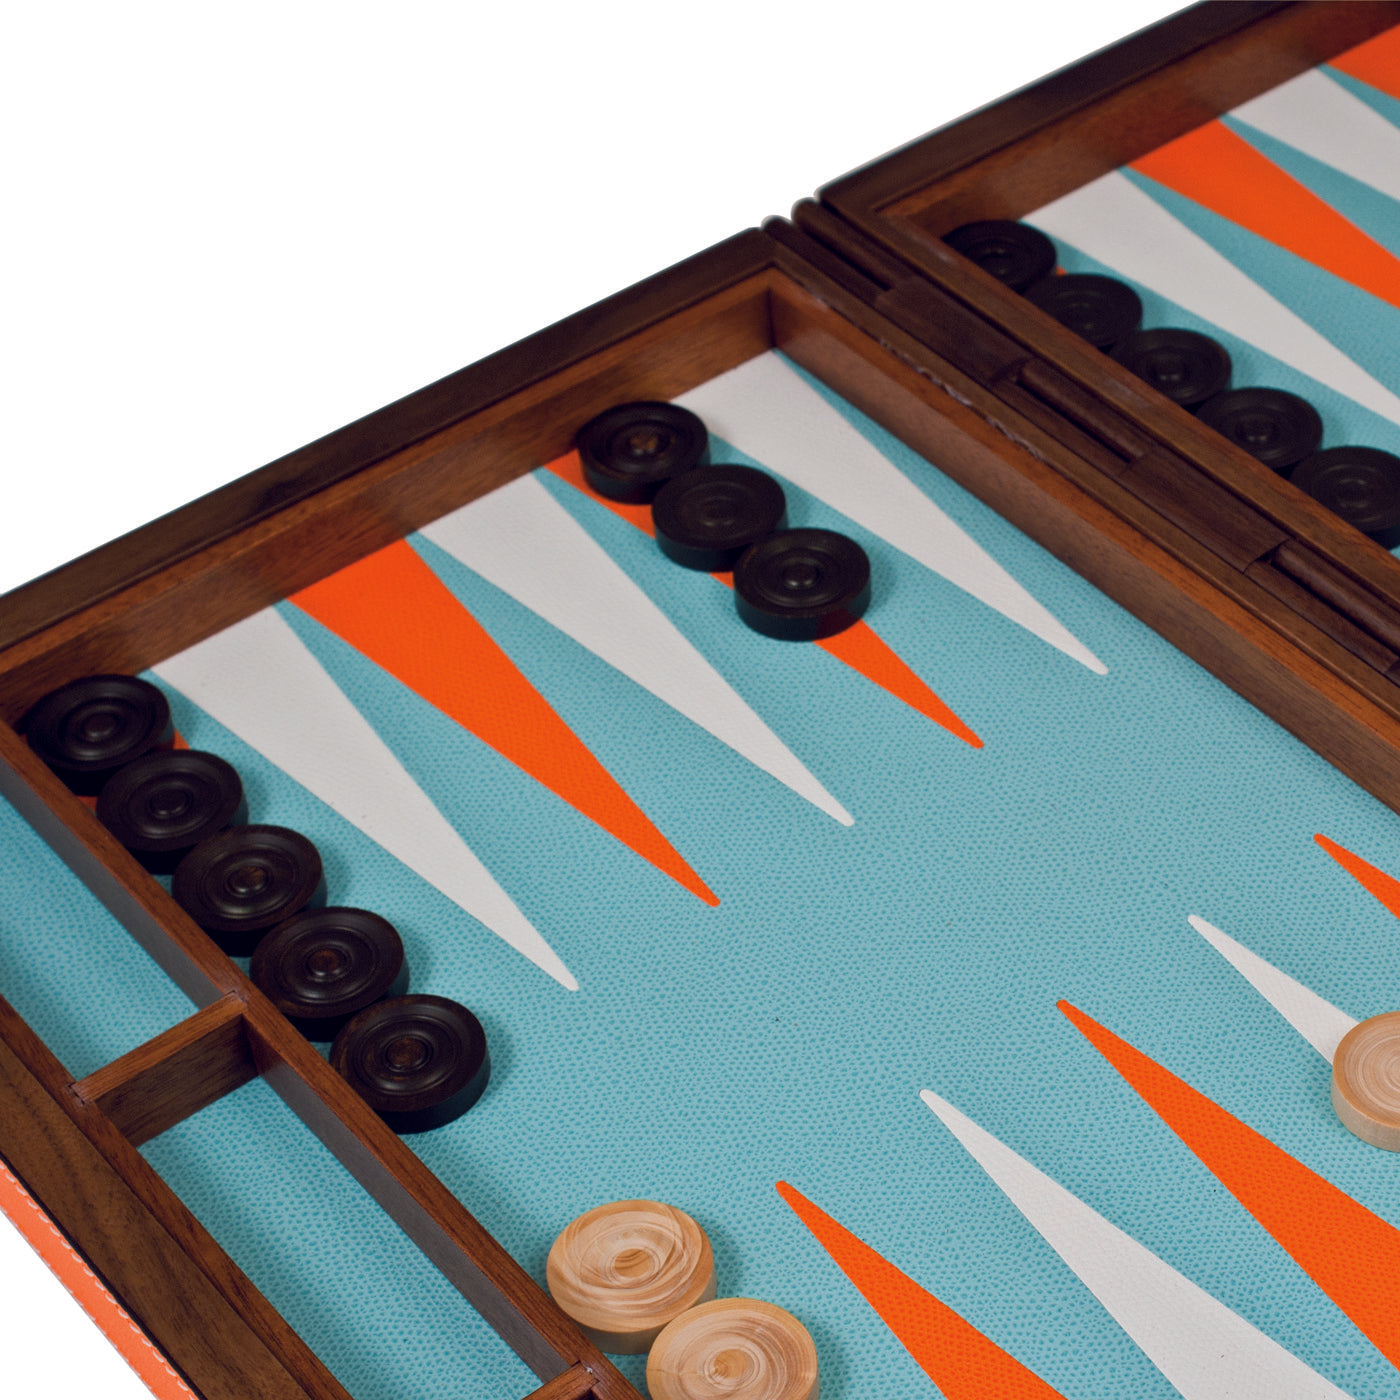 Juego de backgammon grande - Vista alternativa 2